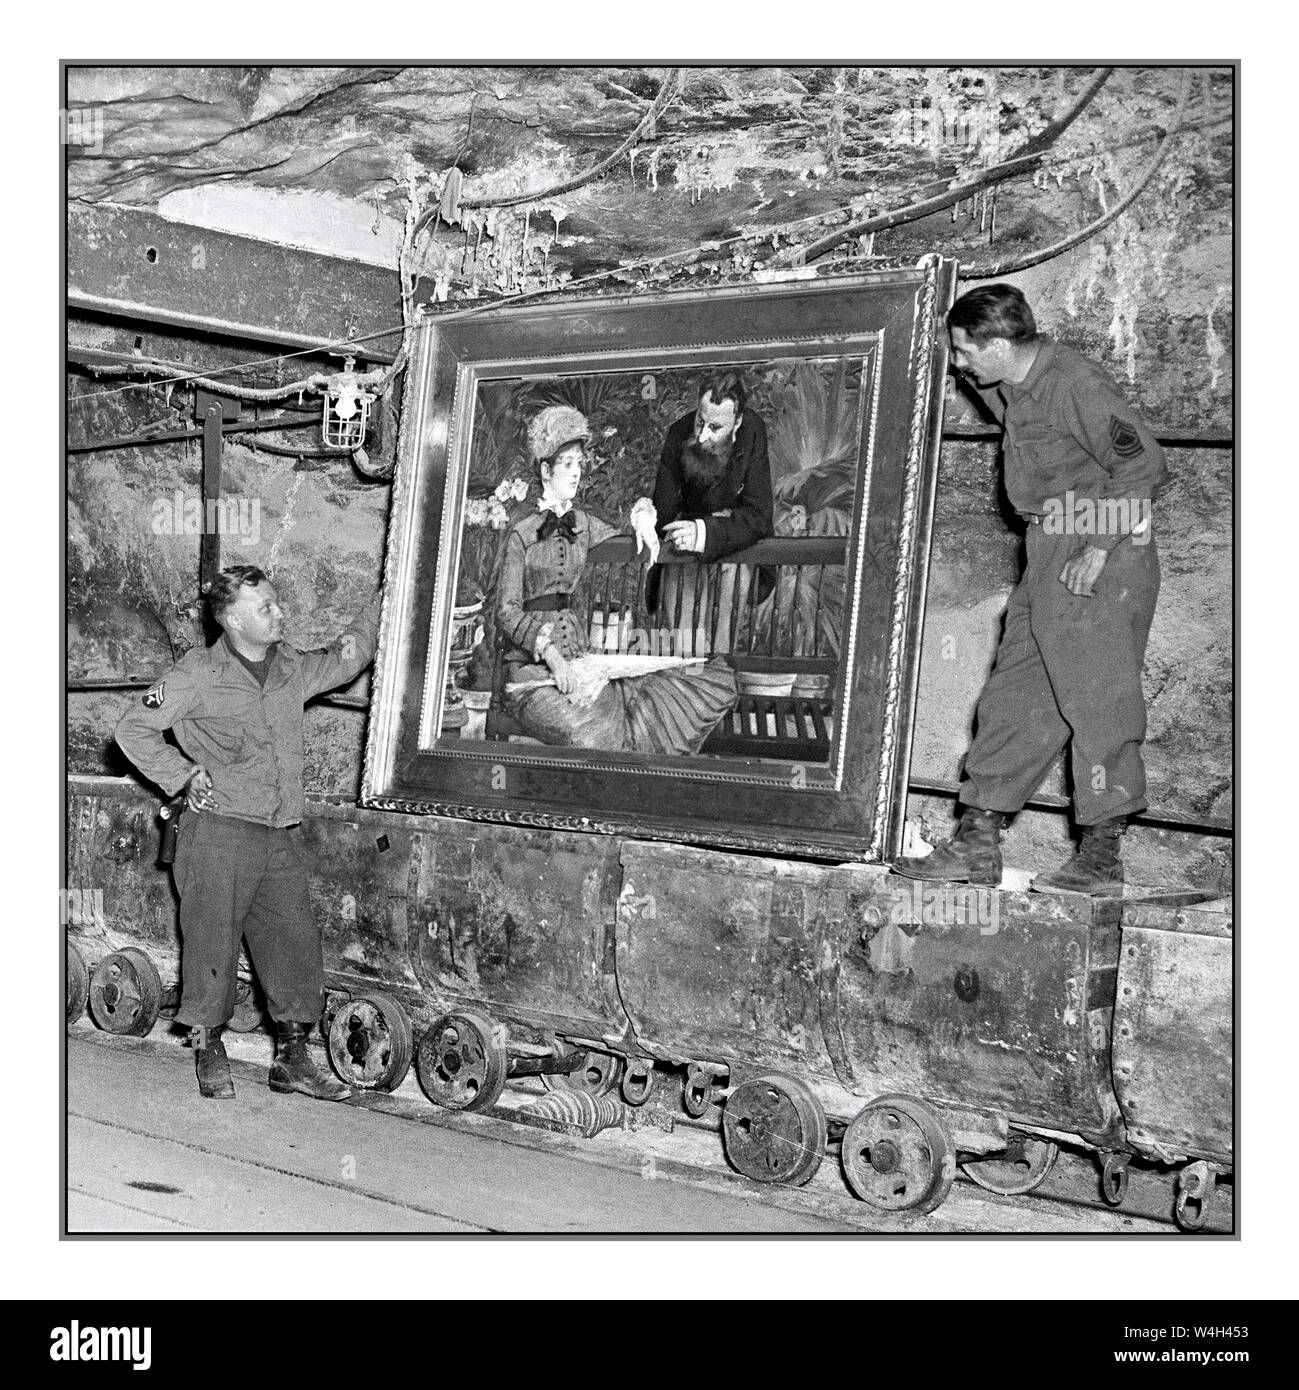 Nach dem 2. Weltkrieg entdeckte Nazi-Beute in Merkers untersuchen US-Soldaten das berühmte Gemälde „im Wintergarten“ von MANET, Edouard“ des französischen Impressionisten Edouard Manet in der Sammlung von Reichtum der Reichbank, SS-Beute und Gemälde, die von den Nazis aus Berlin in ein Salzbergwerk gebracht wurden. Die 90. Div, die dritte US-Armee, entdeckte das Gold und andere Schätze. 15/45 Fotograf: Cpl. Ornitz Stockfoto